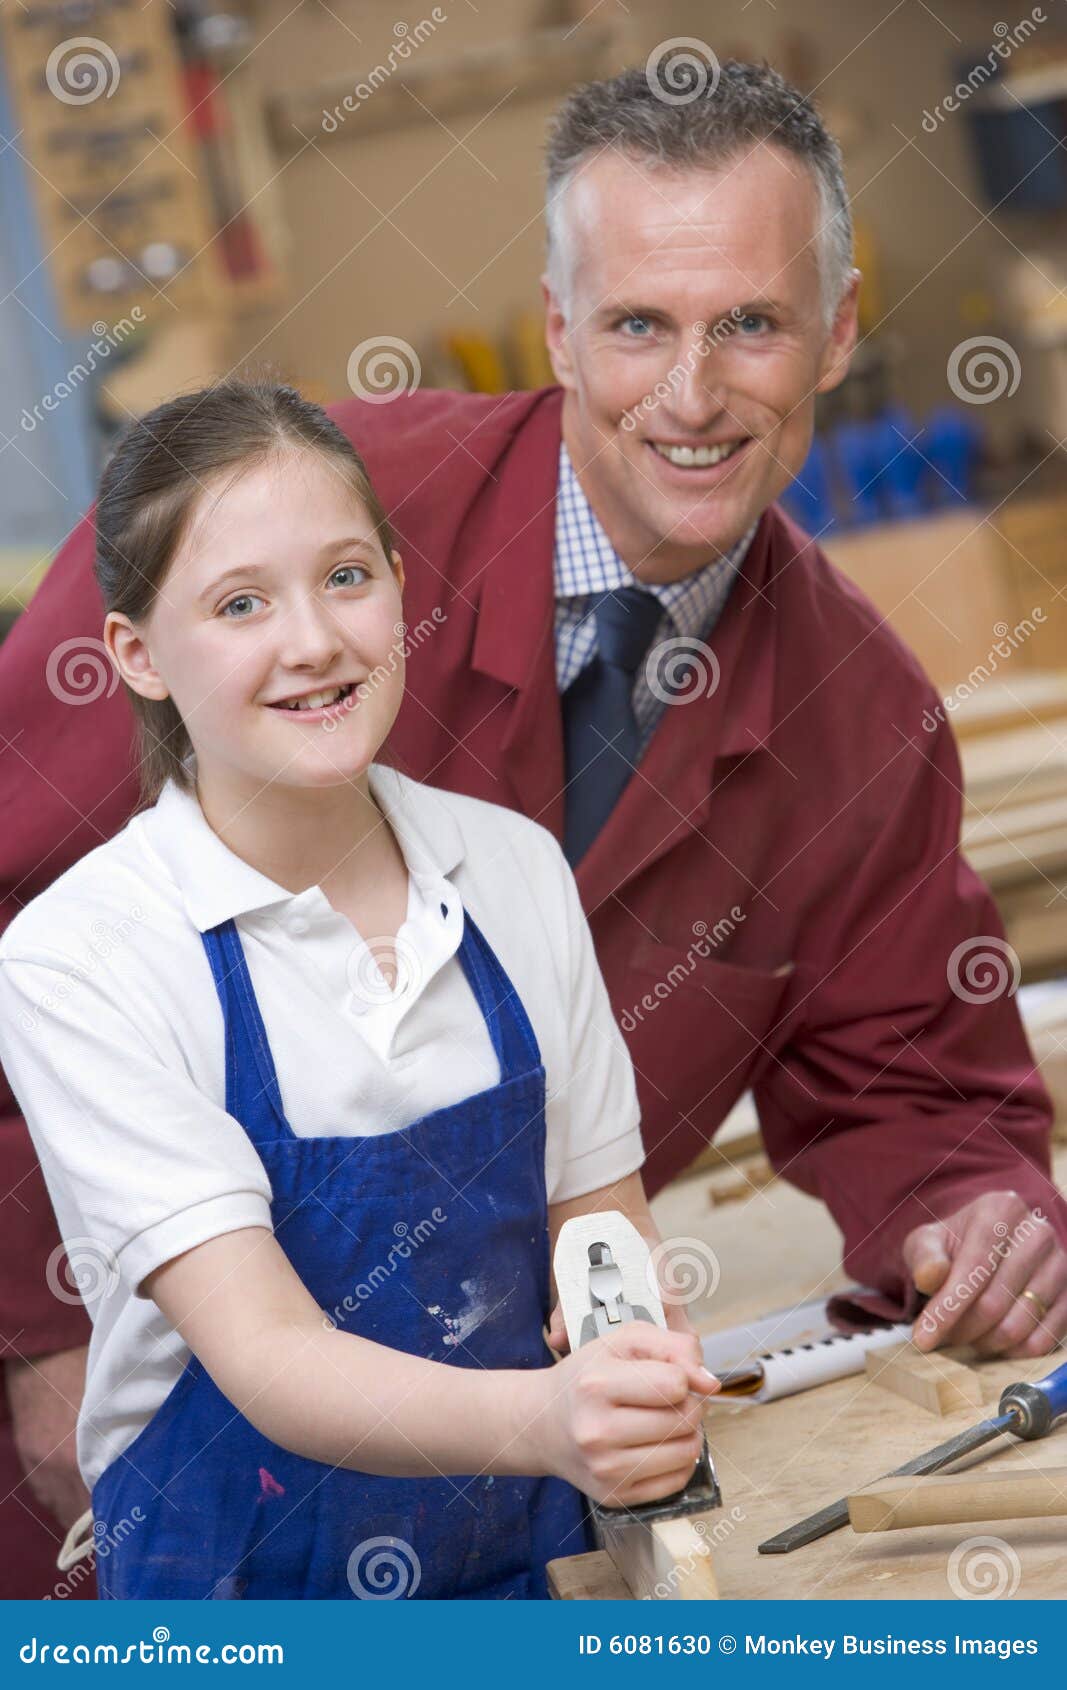 schoolgirl and teacher in woodwork class